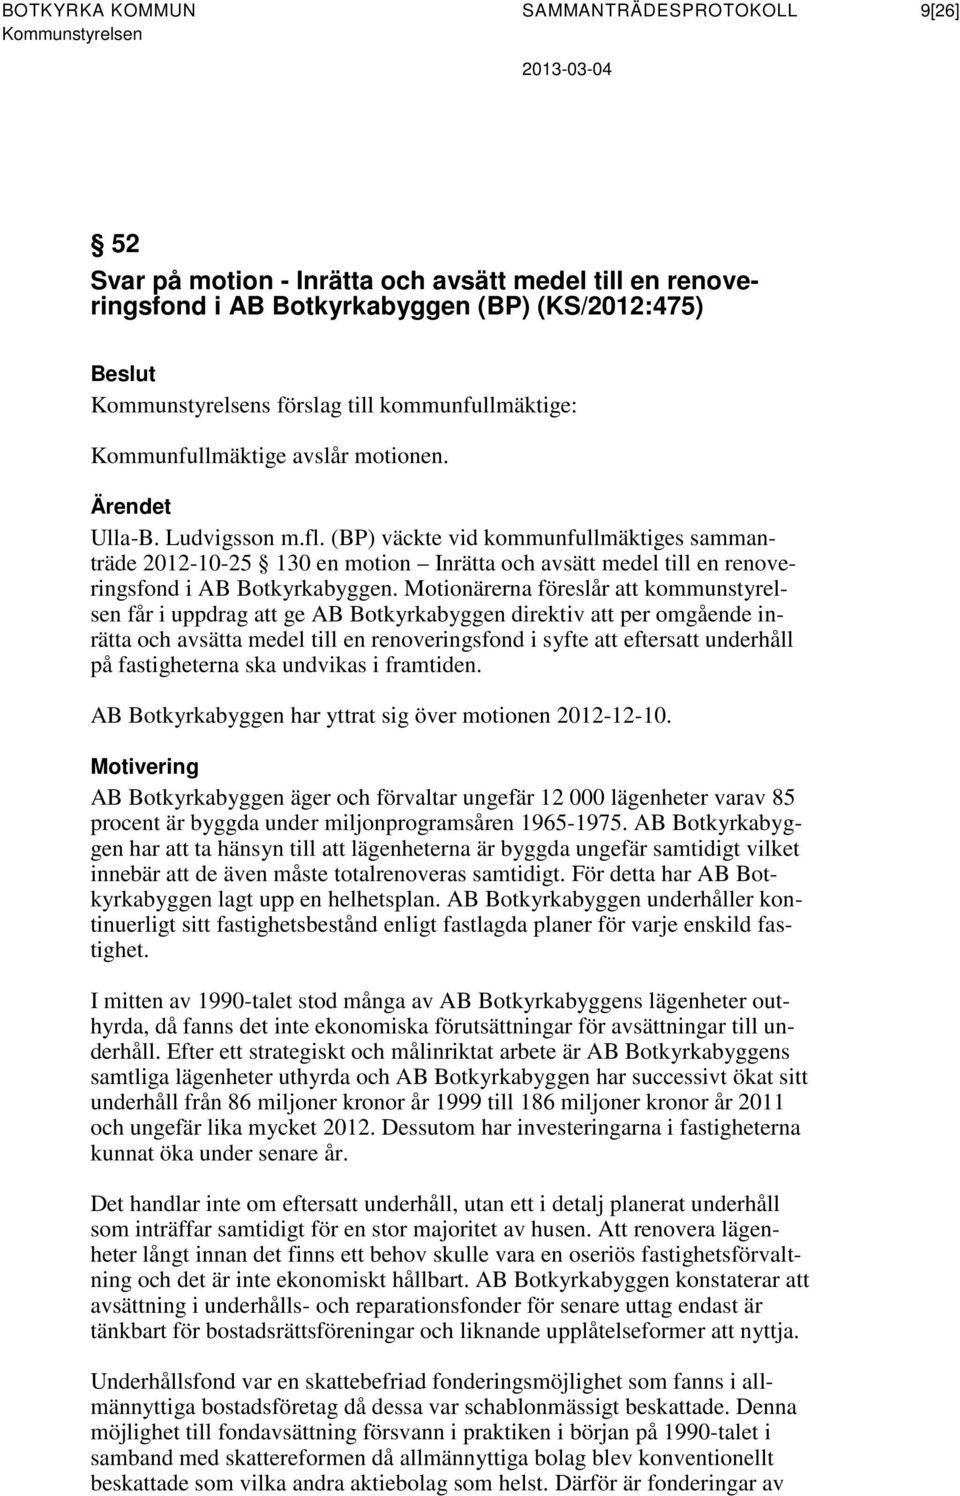 (BP) väckte vid kommunfullmäktiges sammanträde 2012-10-25 130 en motion Inrätta och avsätt medel till en renoveringsfond i AB Botkyrkabyggen.